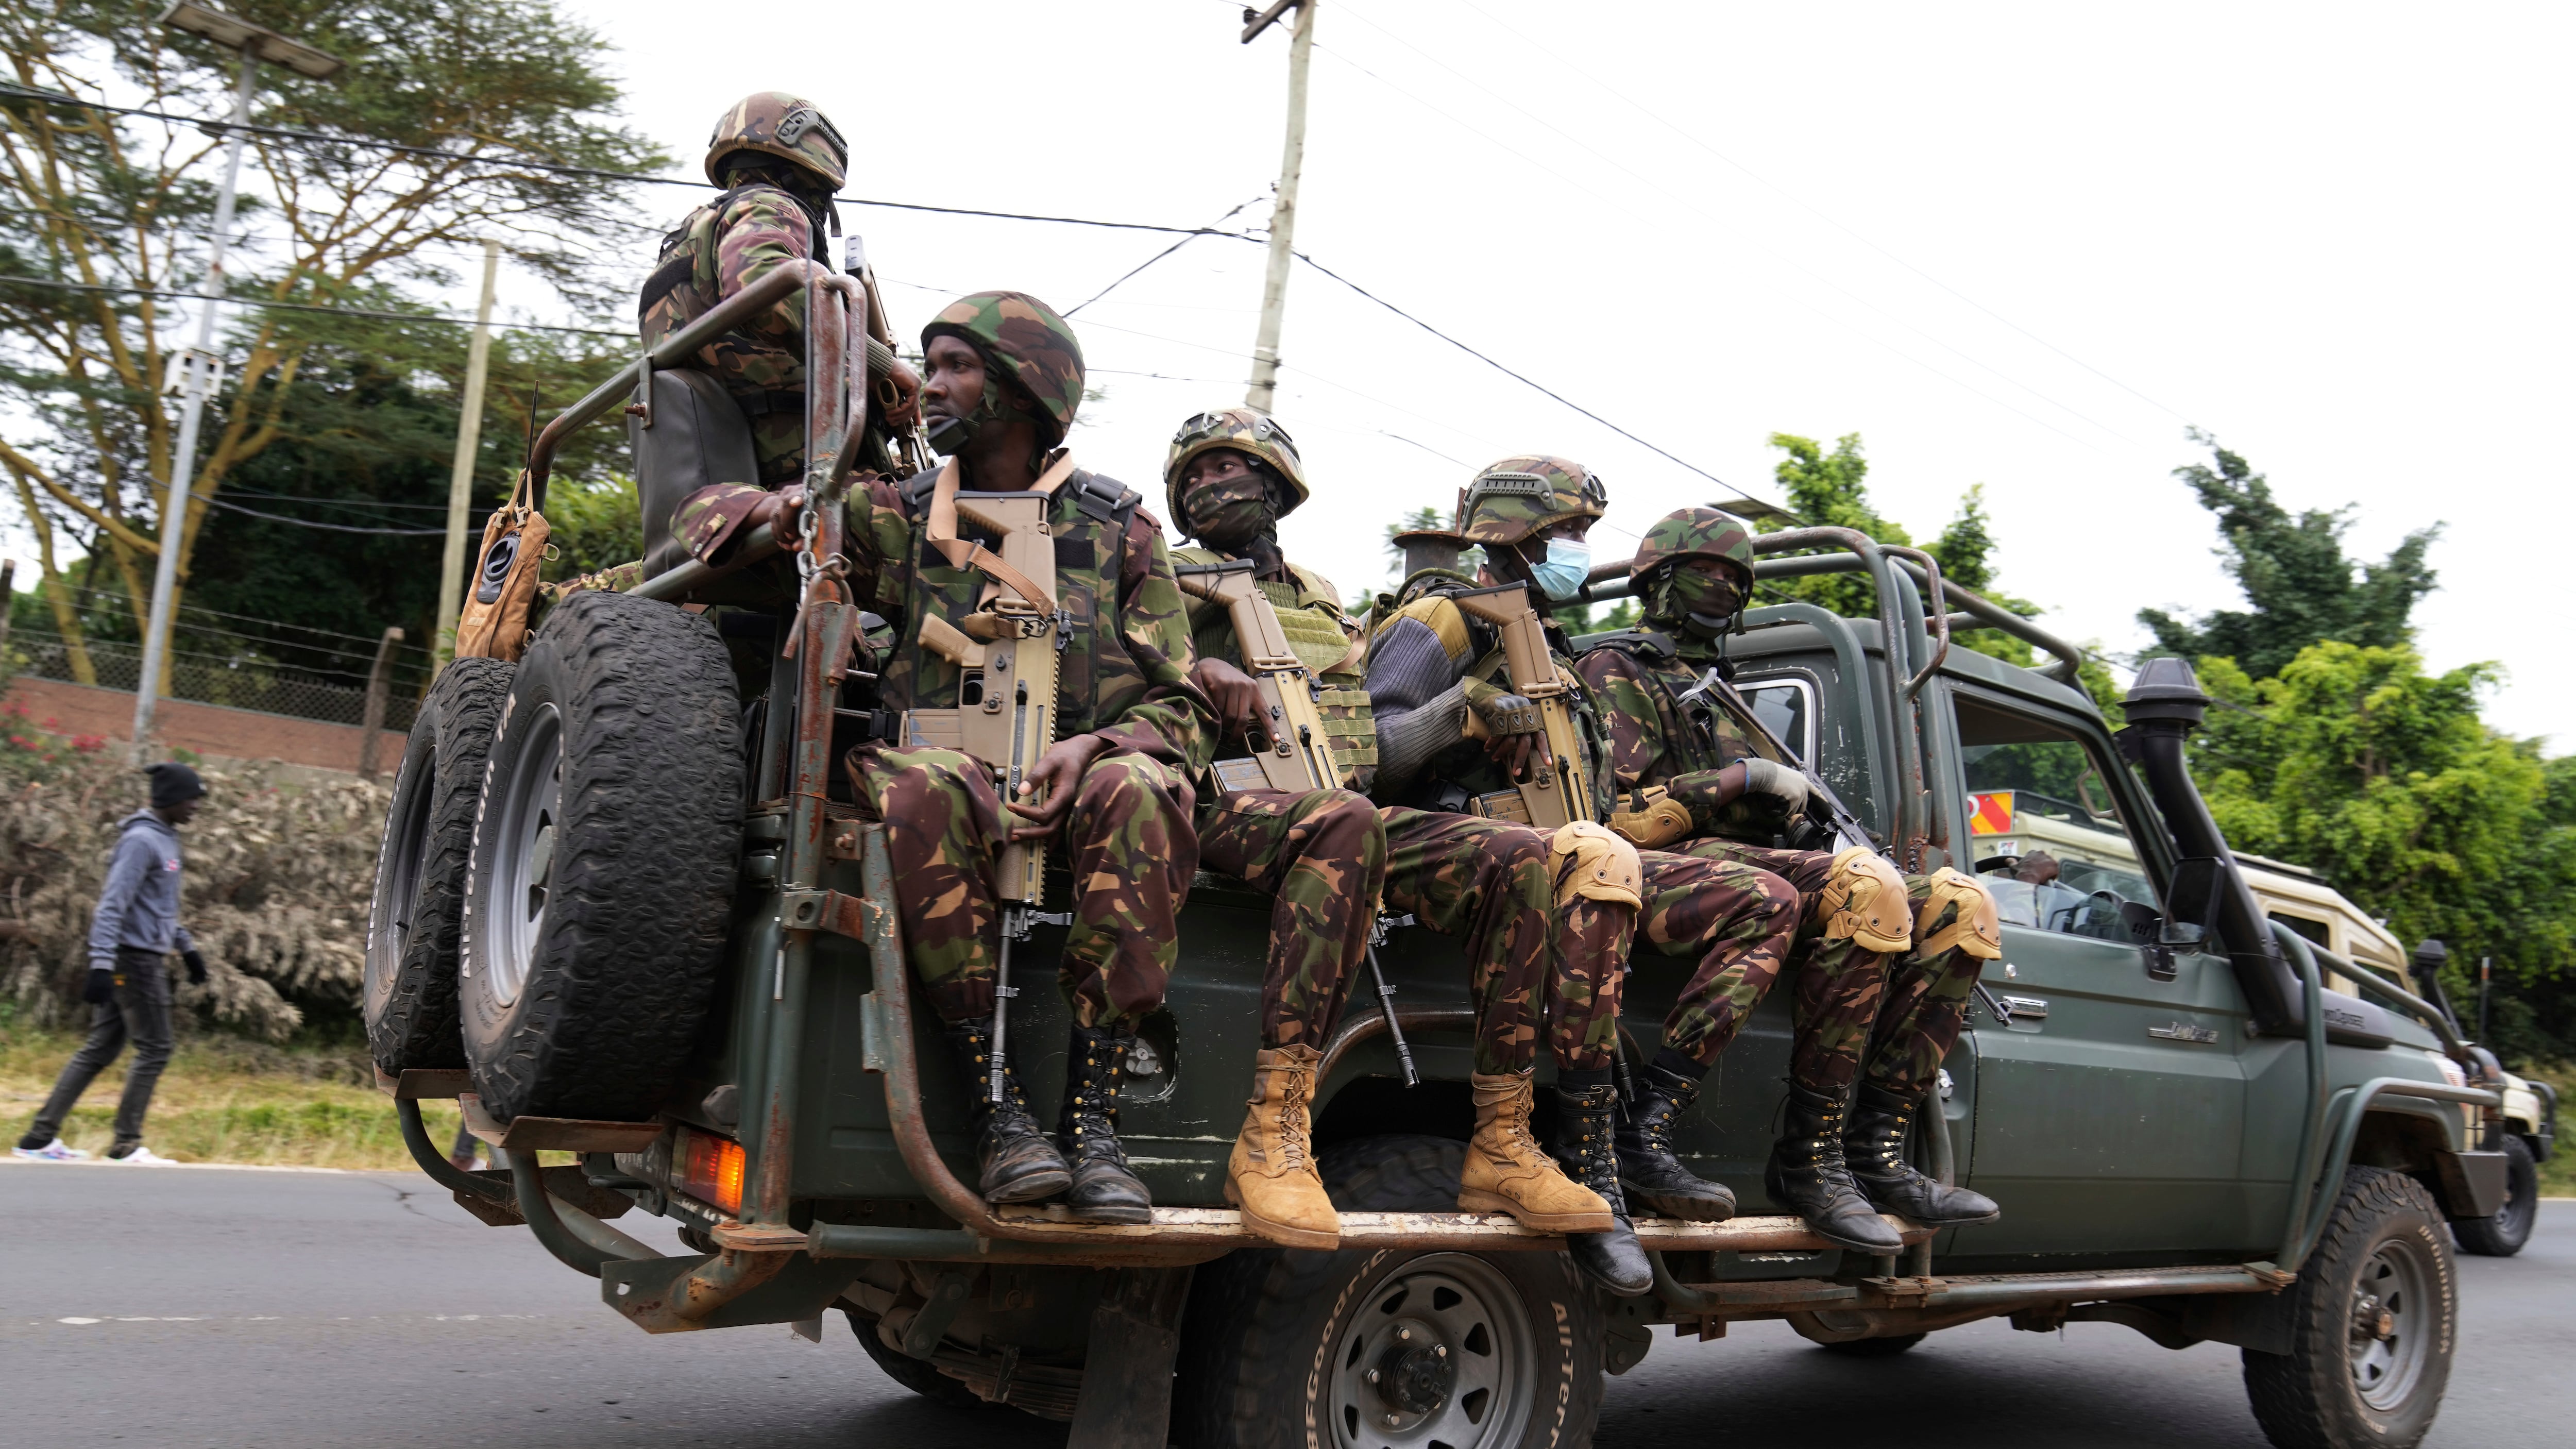 Army soldiers patrol around Nairobi, Kenya (Brian Inganga/AP)